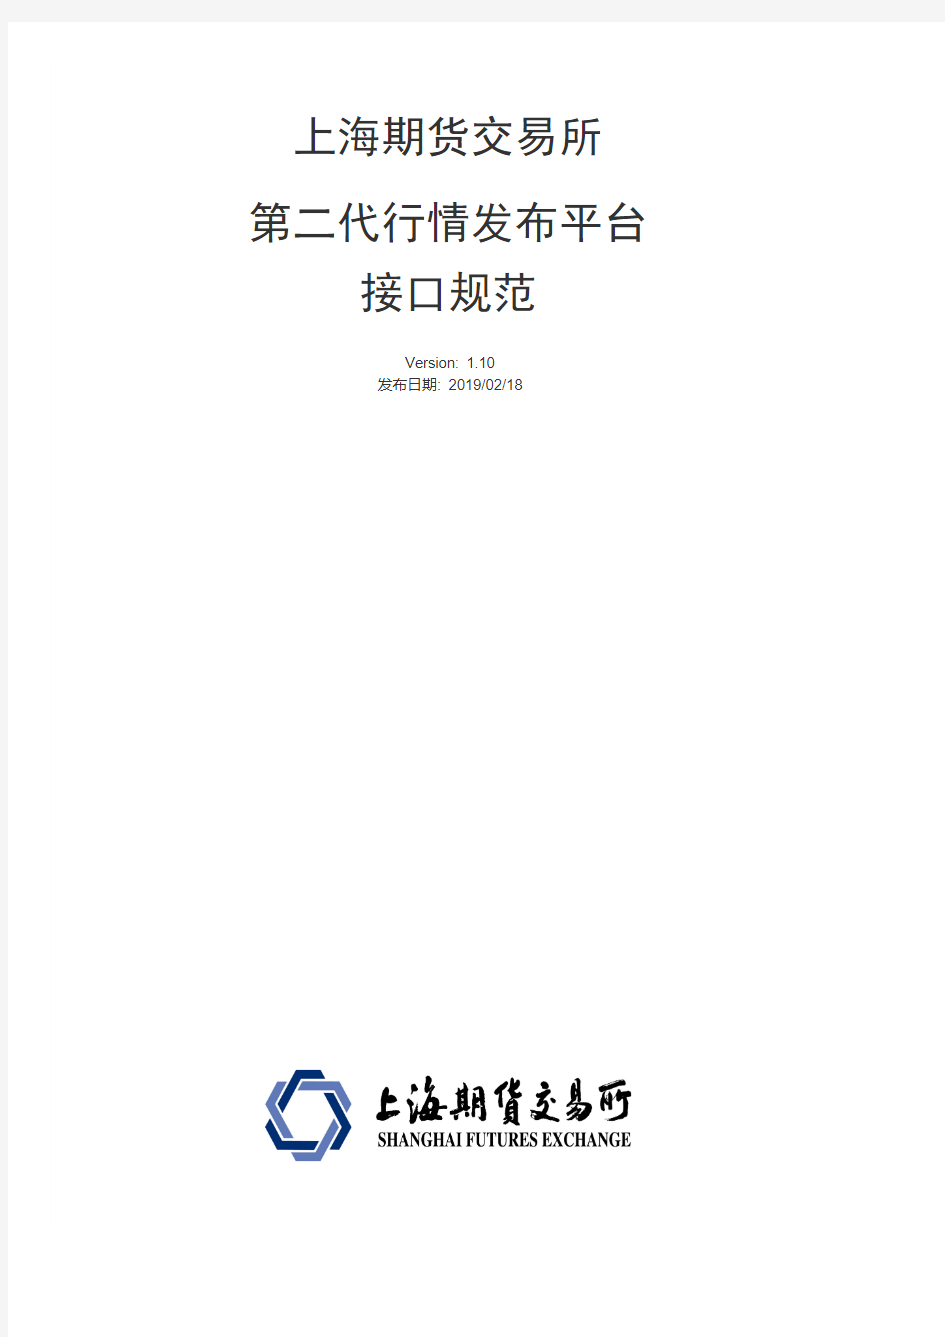 第二代行情发布平台上海期货交易所